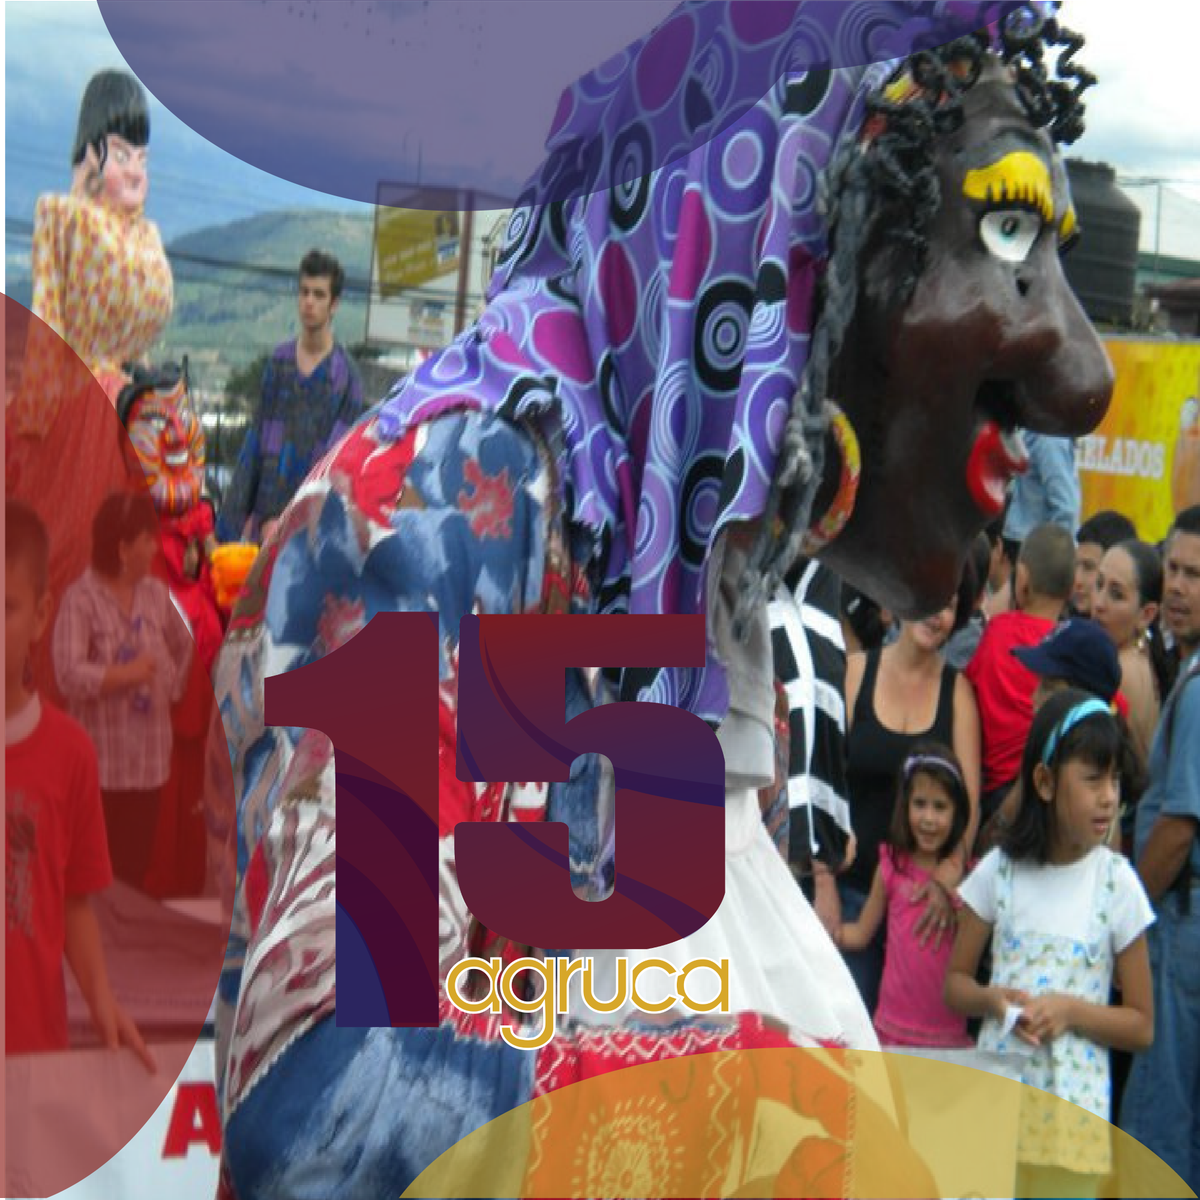 Octubre 2010, Feria del Tamal, Aserrí, CR.
¡15 Aniversario!🥳🎂🎉🎊
#somosfamilia #somosagruca #15años #orgulloaserriceño #estamosdefiesta #quélindoseragruco